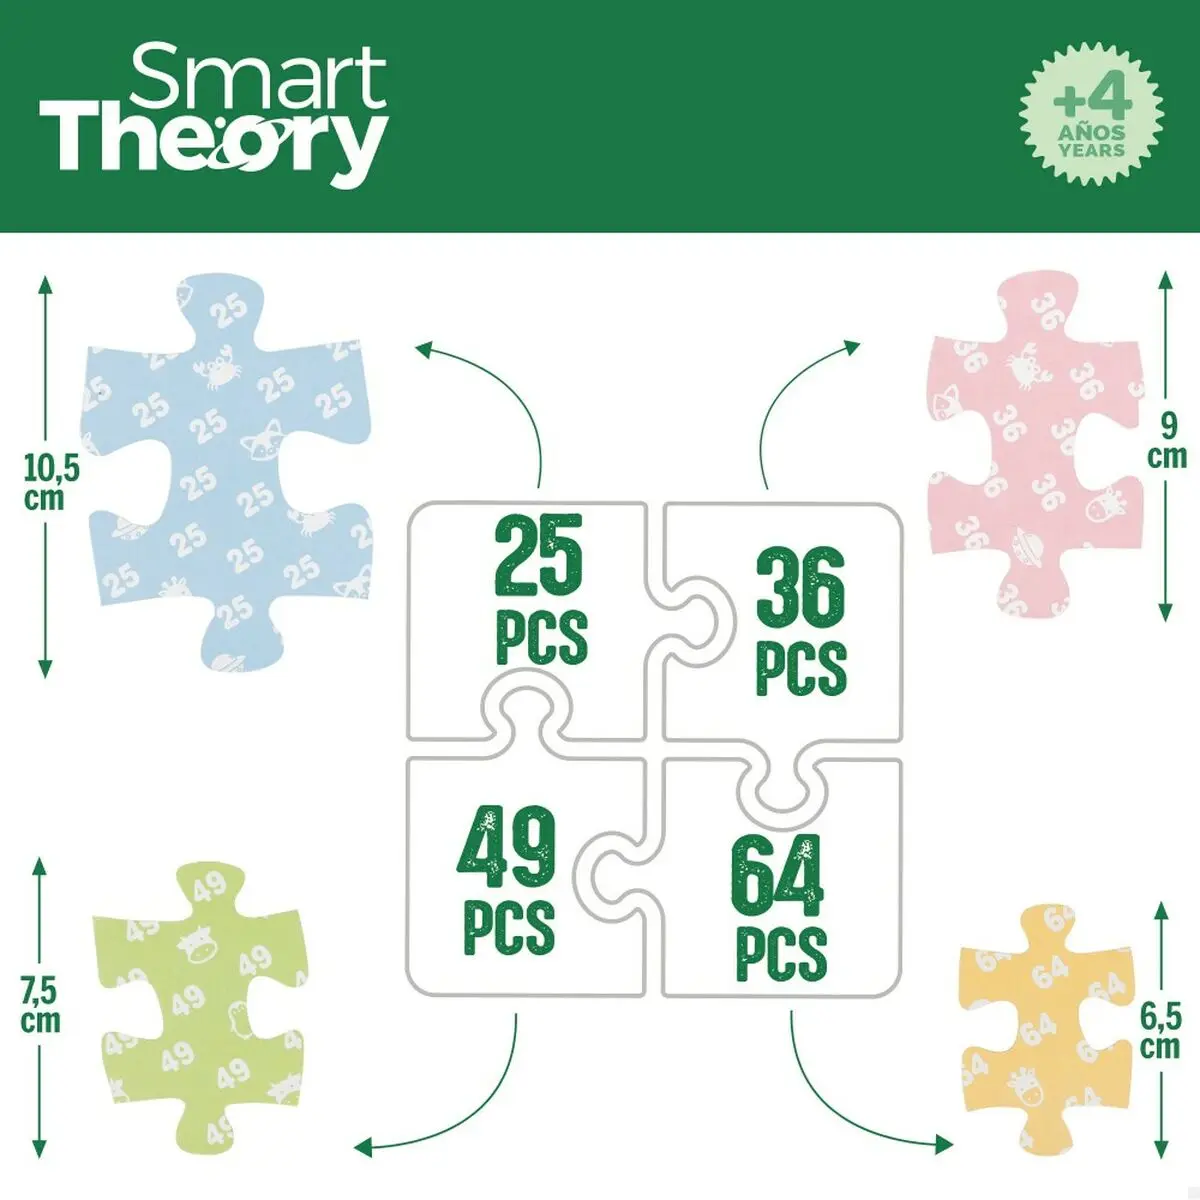 Puzzle per Bambini Colorbaby 4 in 1 174 Pezzi Fattoria 68 x 68 cm (6 Unità)